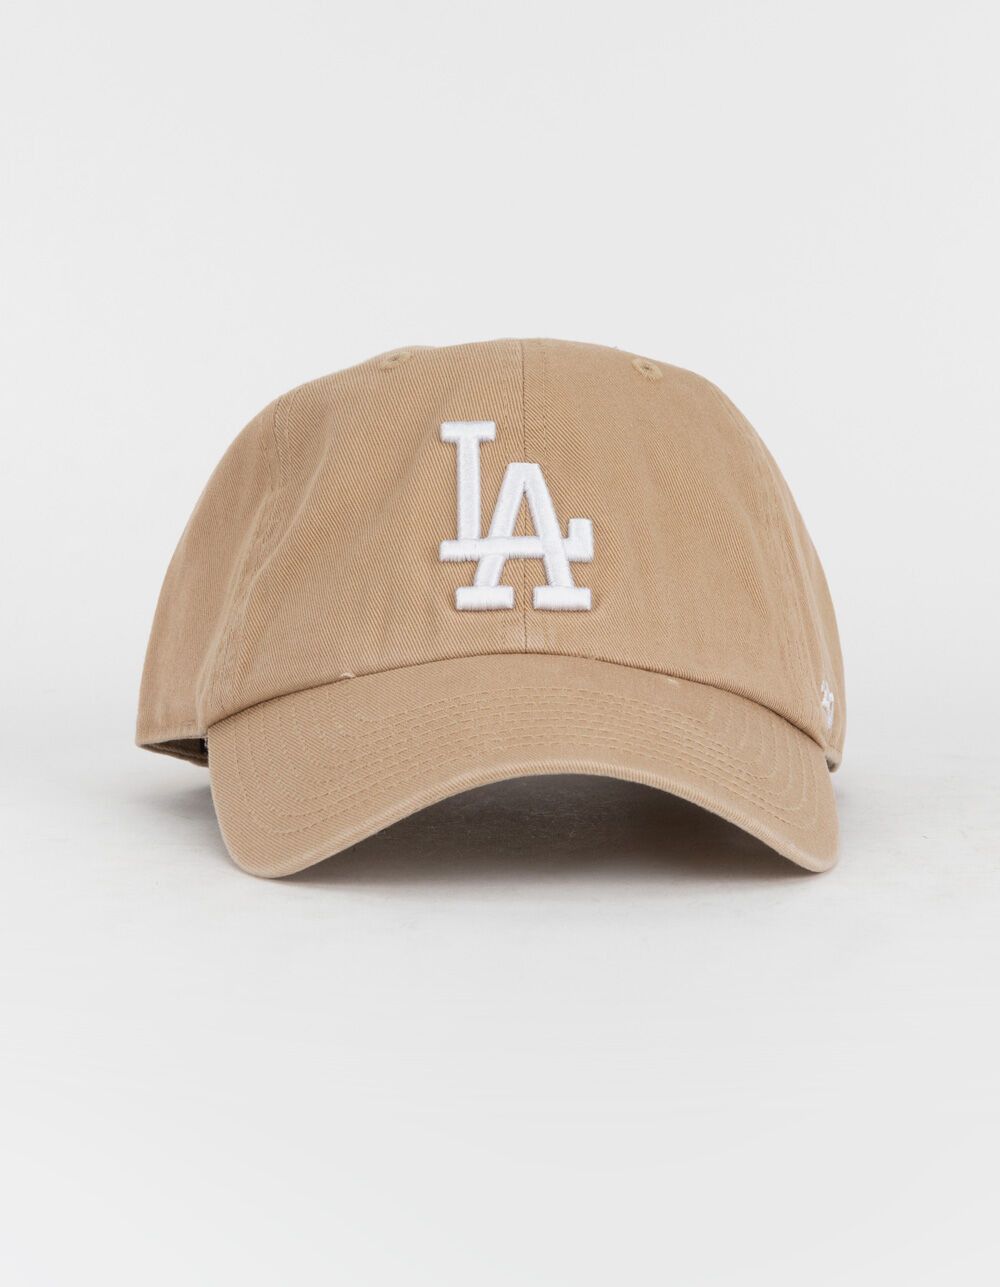 47 BRAND Los Angeles Dodgers '47 Clean Up Strapback Hat | Tillys